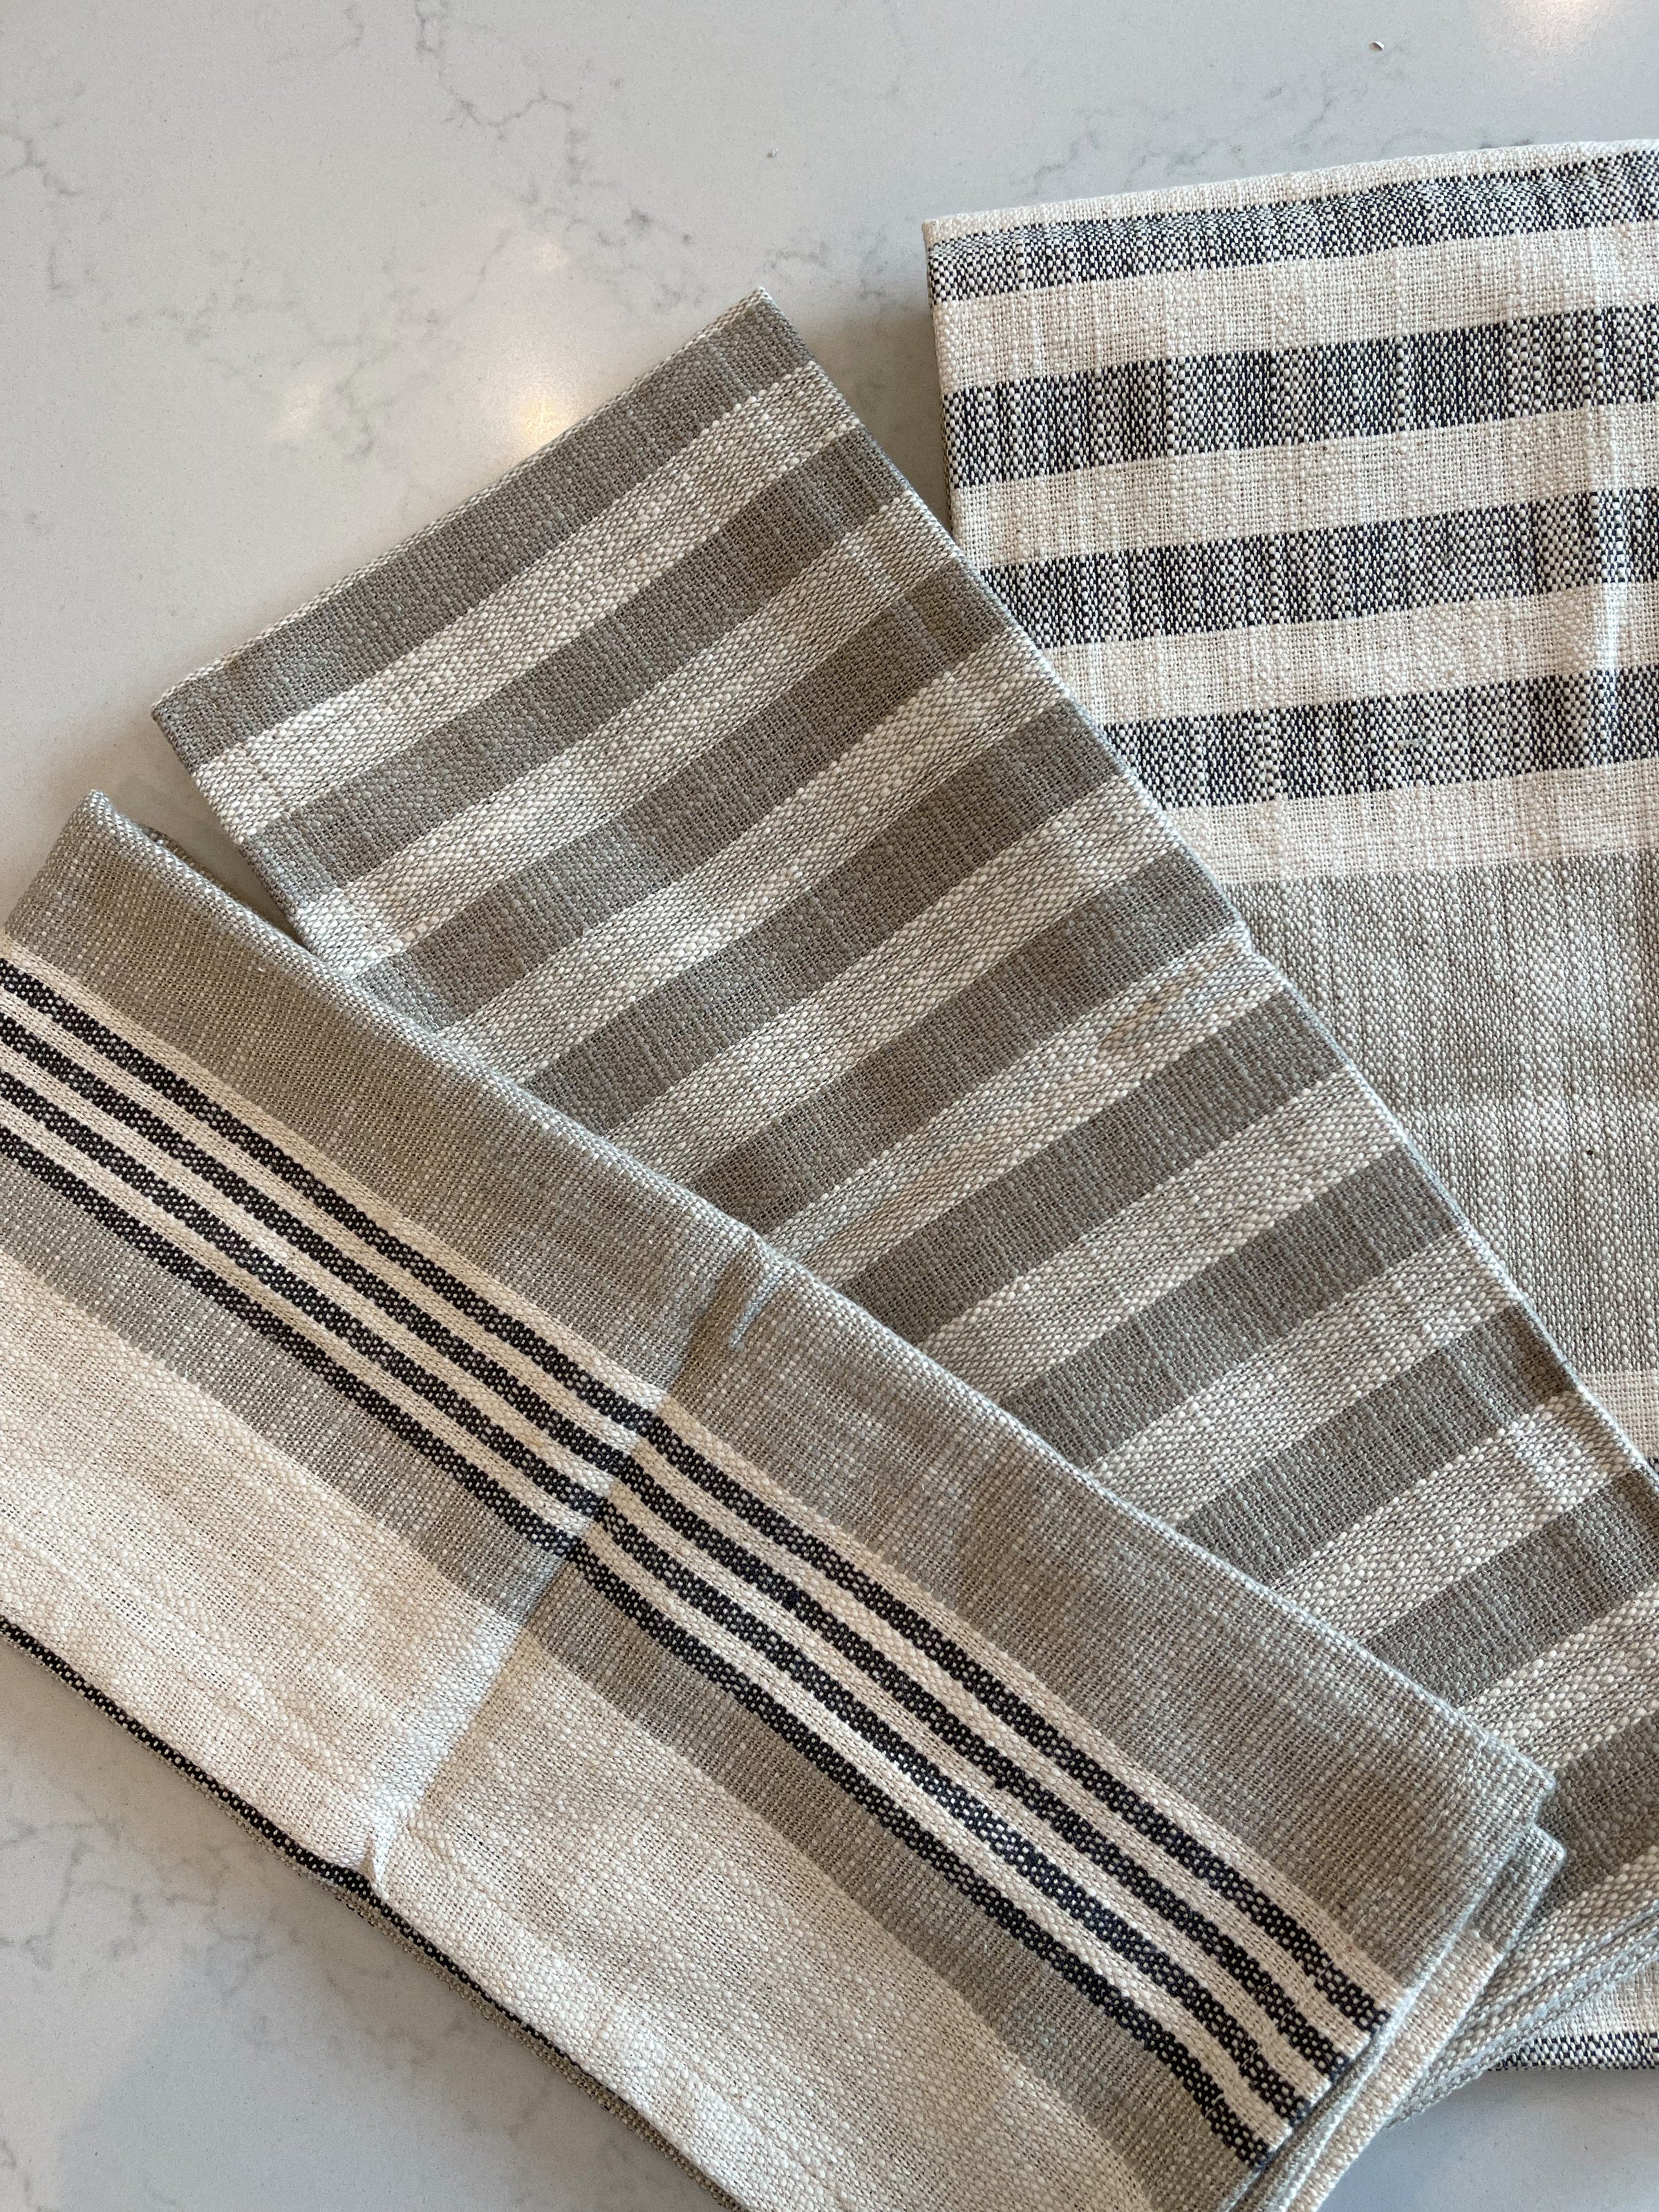 Tea Towel Sets - Grey And Blue Tea Towels